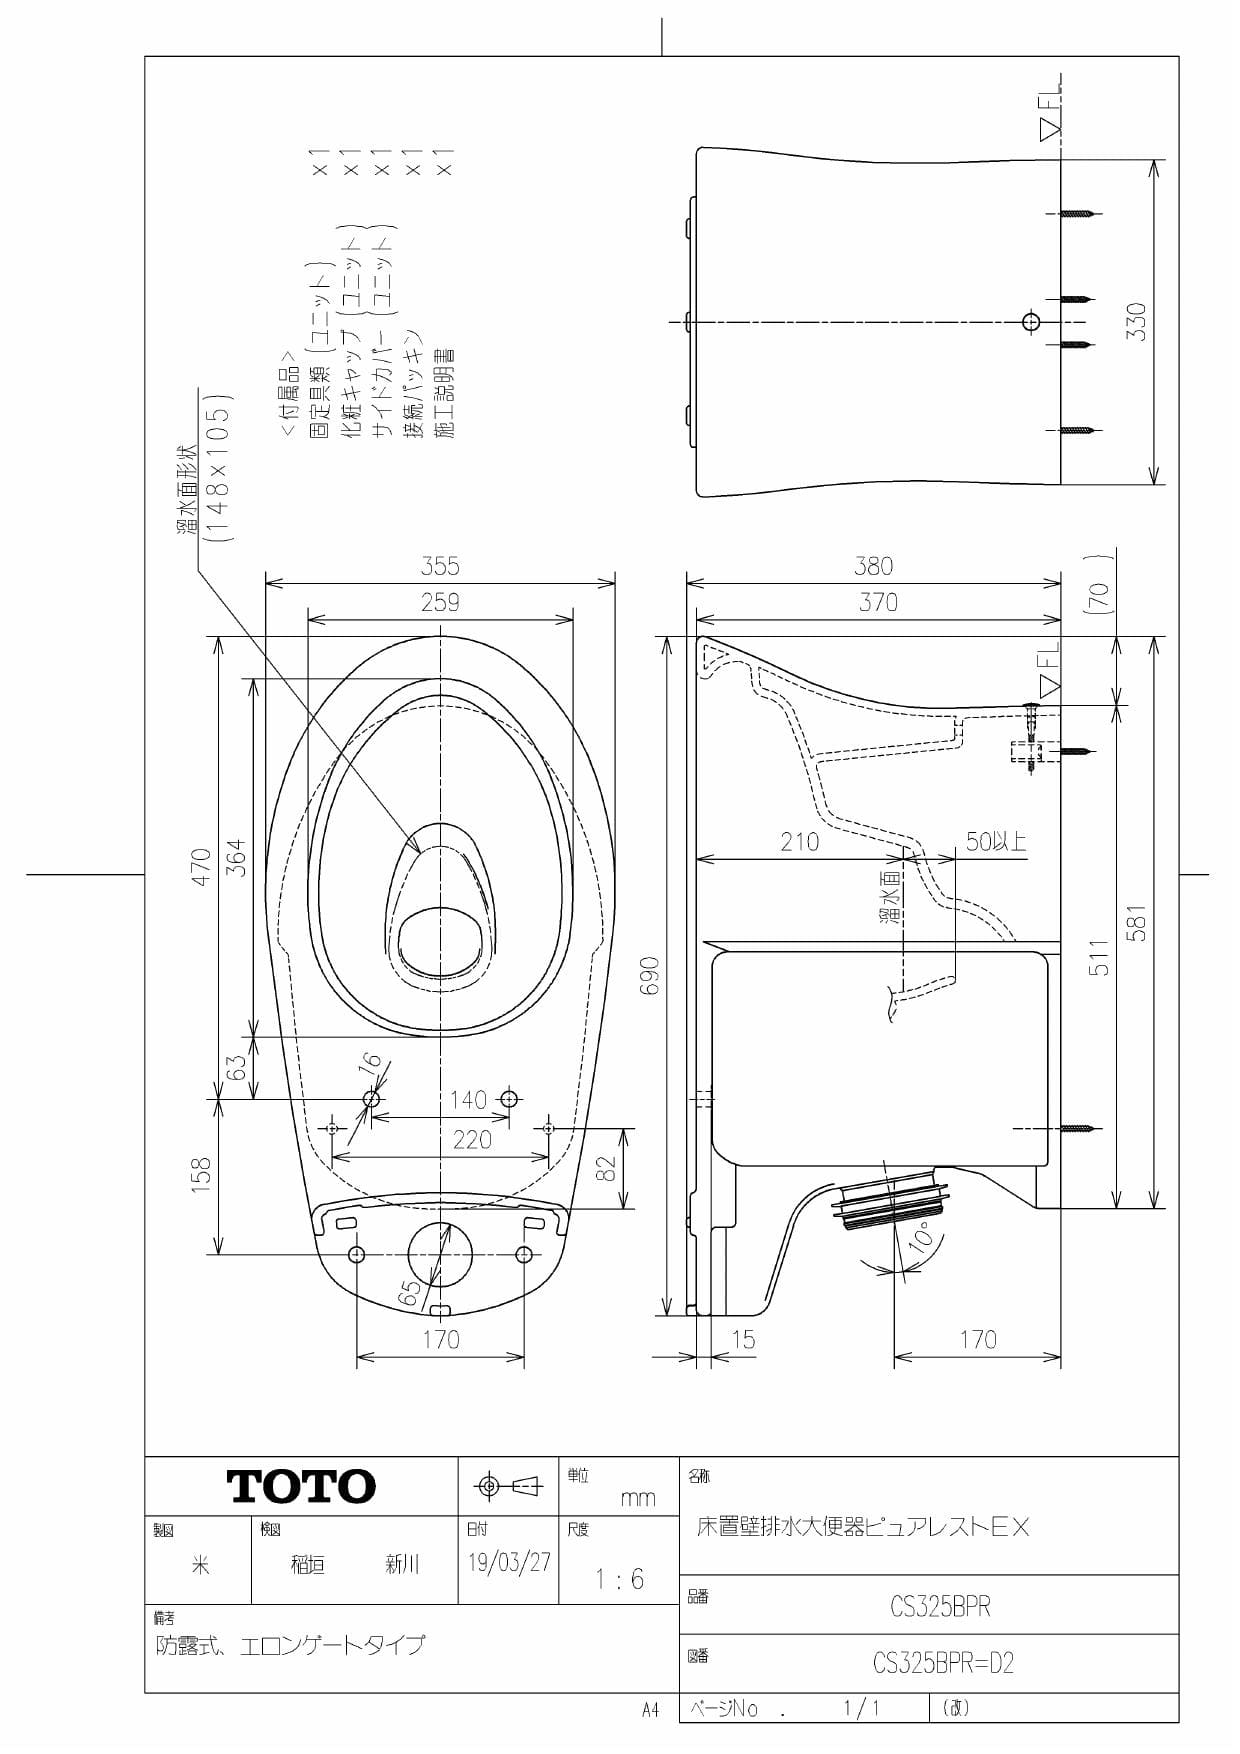 TOTO トイレ ピュアレストEX 組み合わせ便器 CS400B SH400BA 床排水 手洗なし KSシリーズ TCF8GS34 - 5